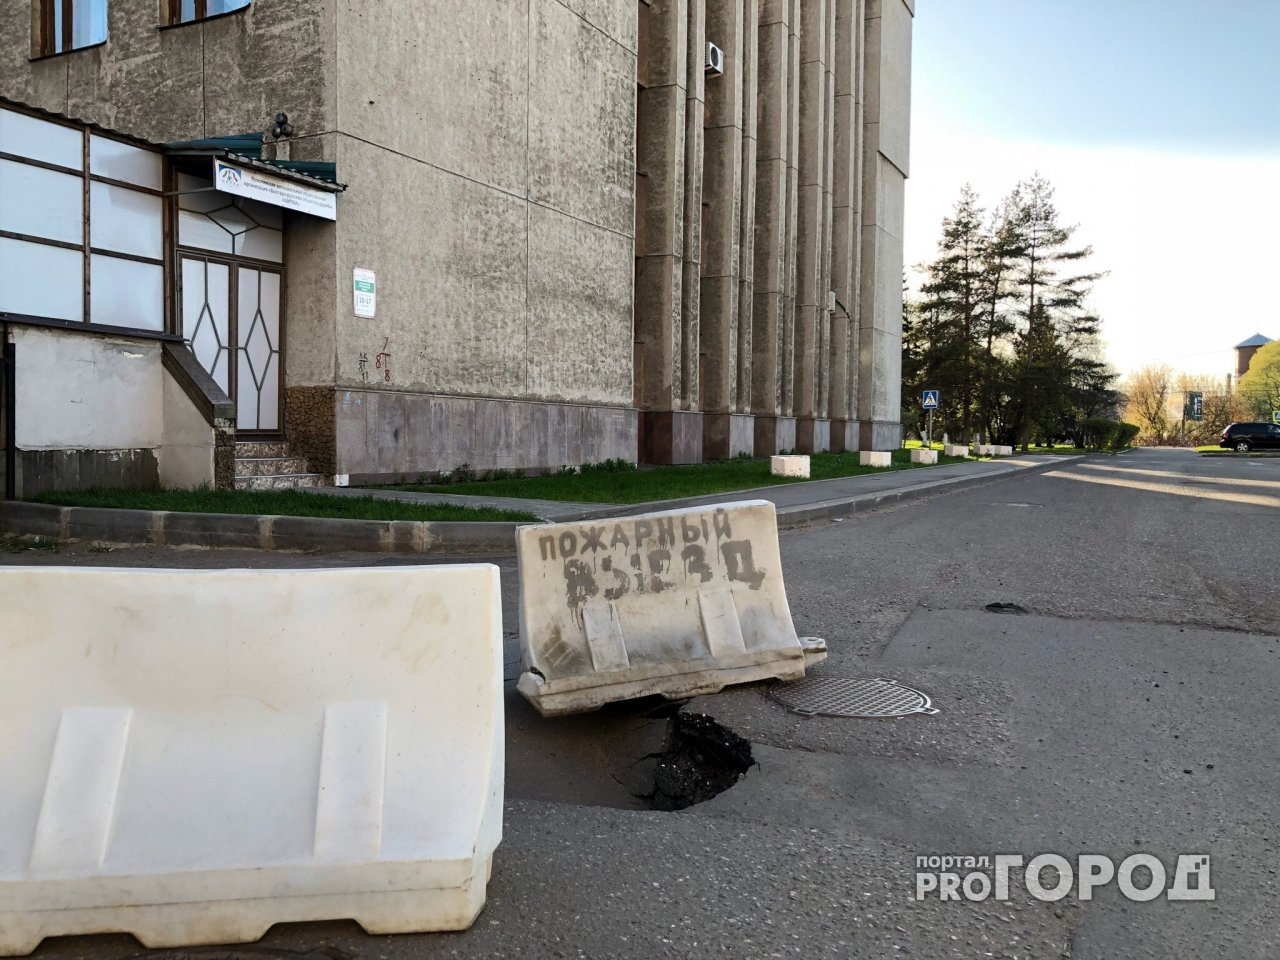 Пожарный выезд из-под земли нашли у администрации двух районов Ярославля: фото